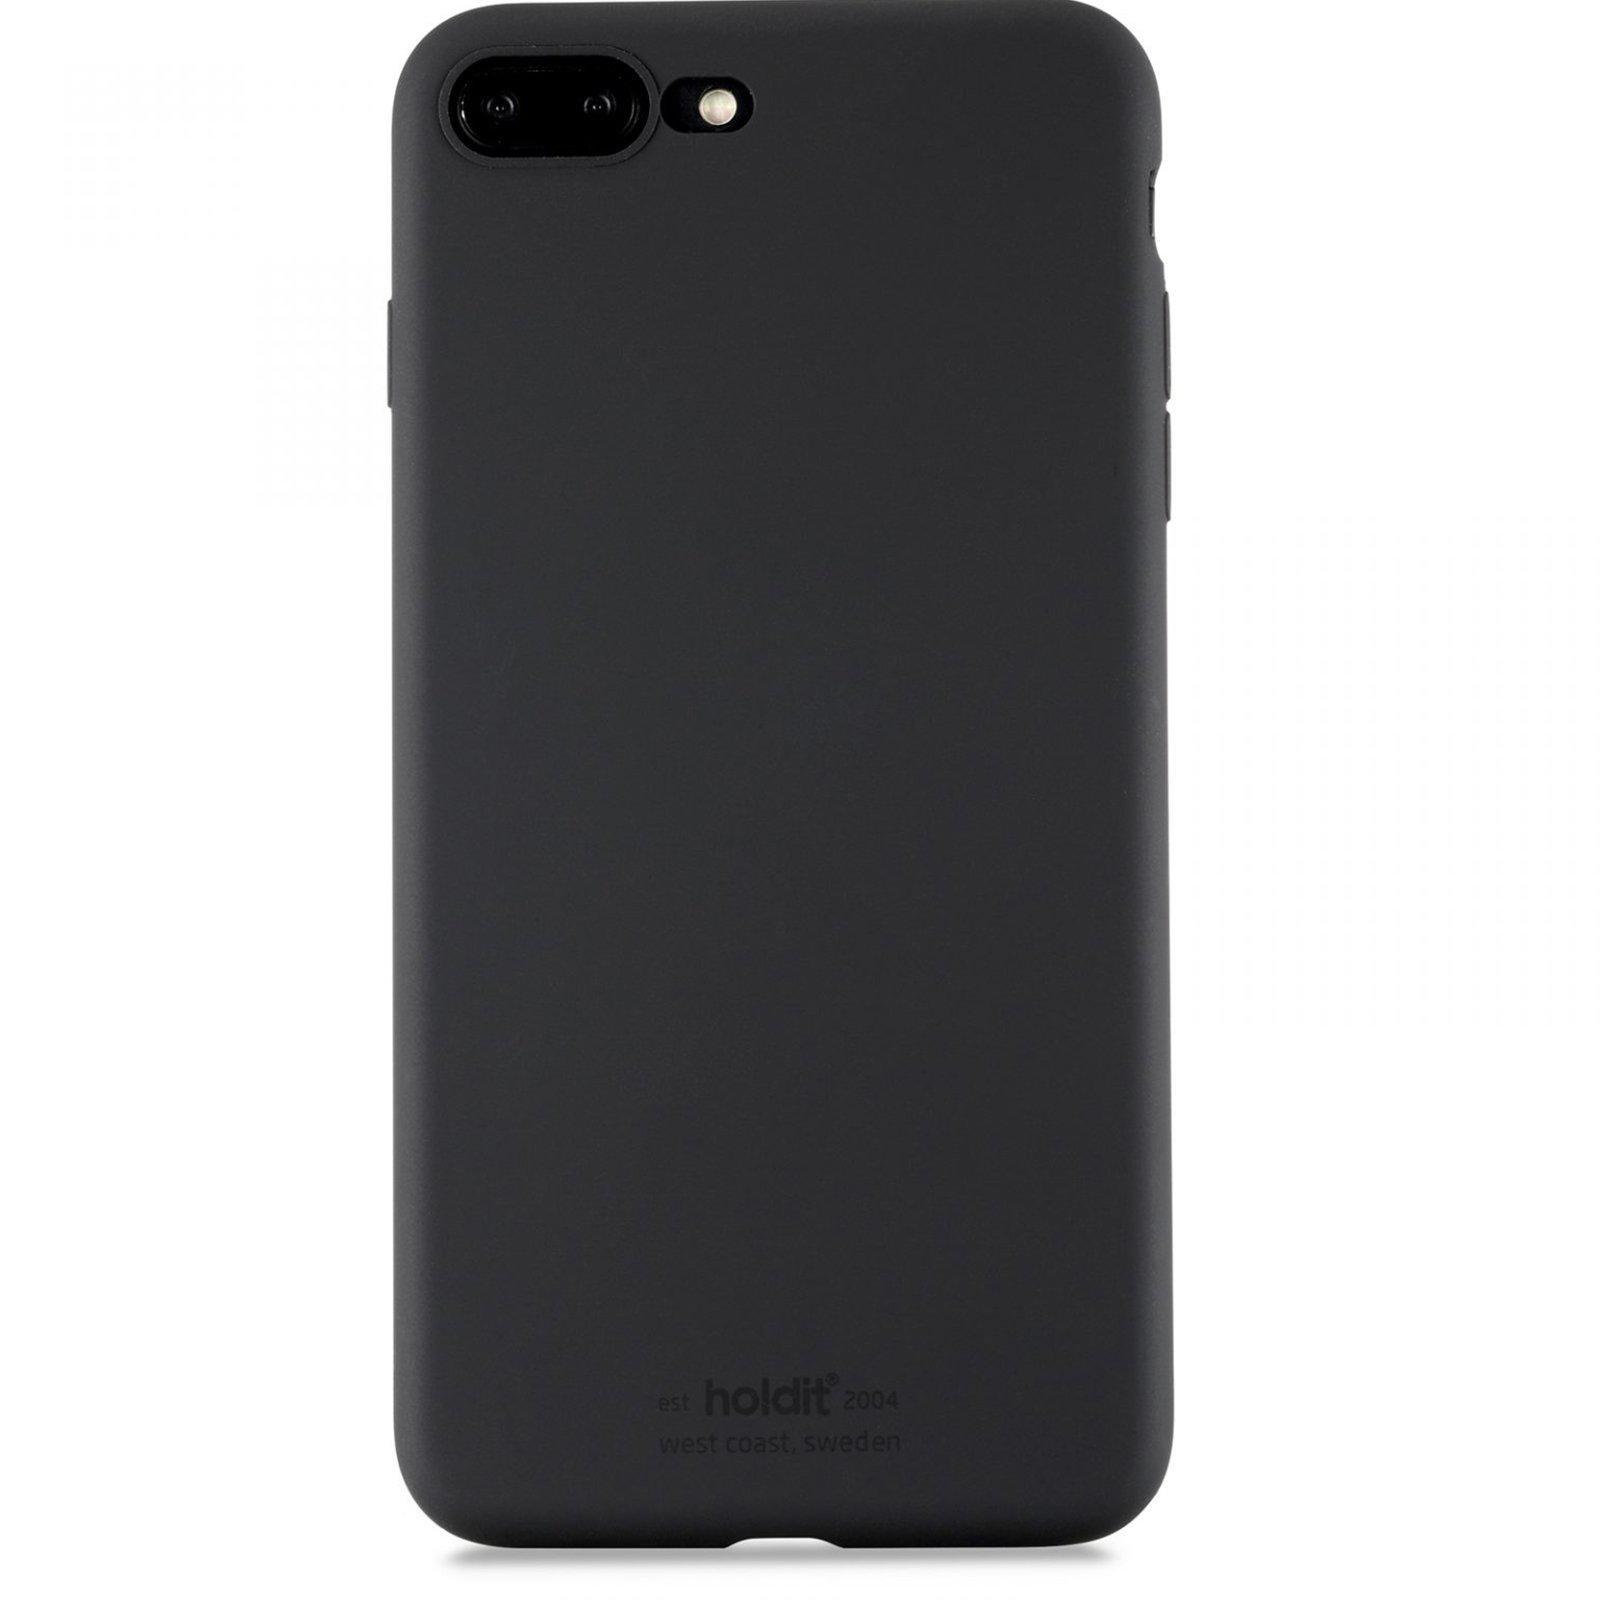 Funda de silicona iPhone 7 Plus/8 Plus Black